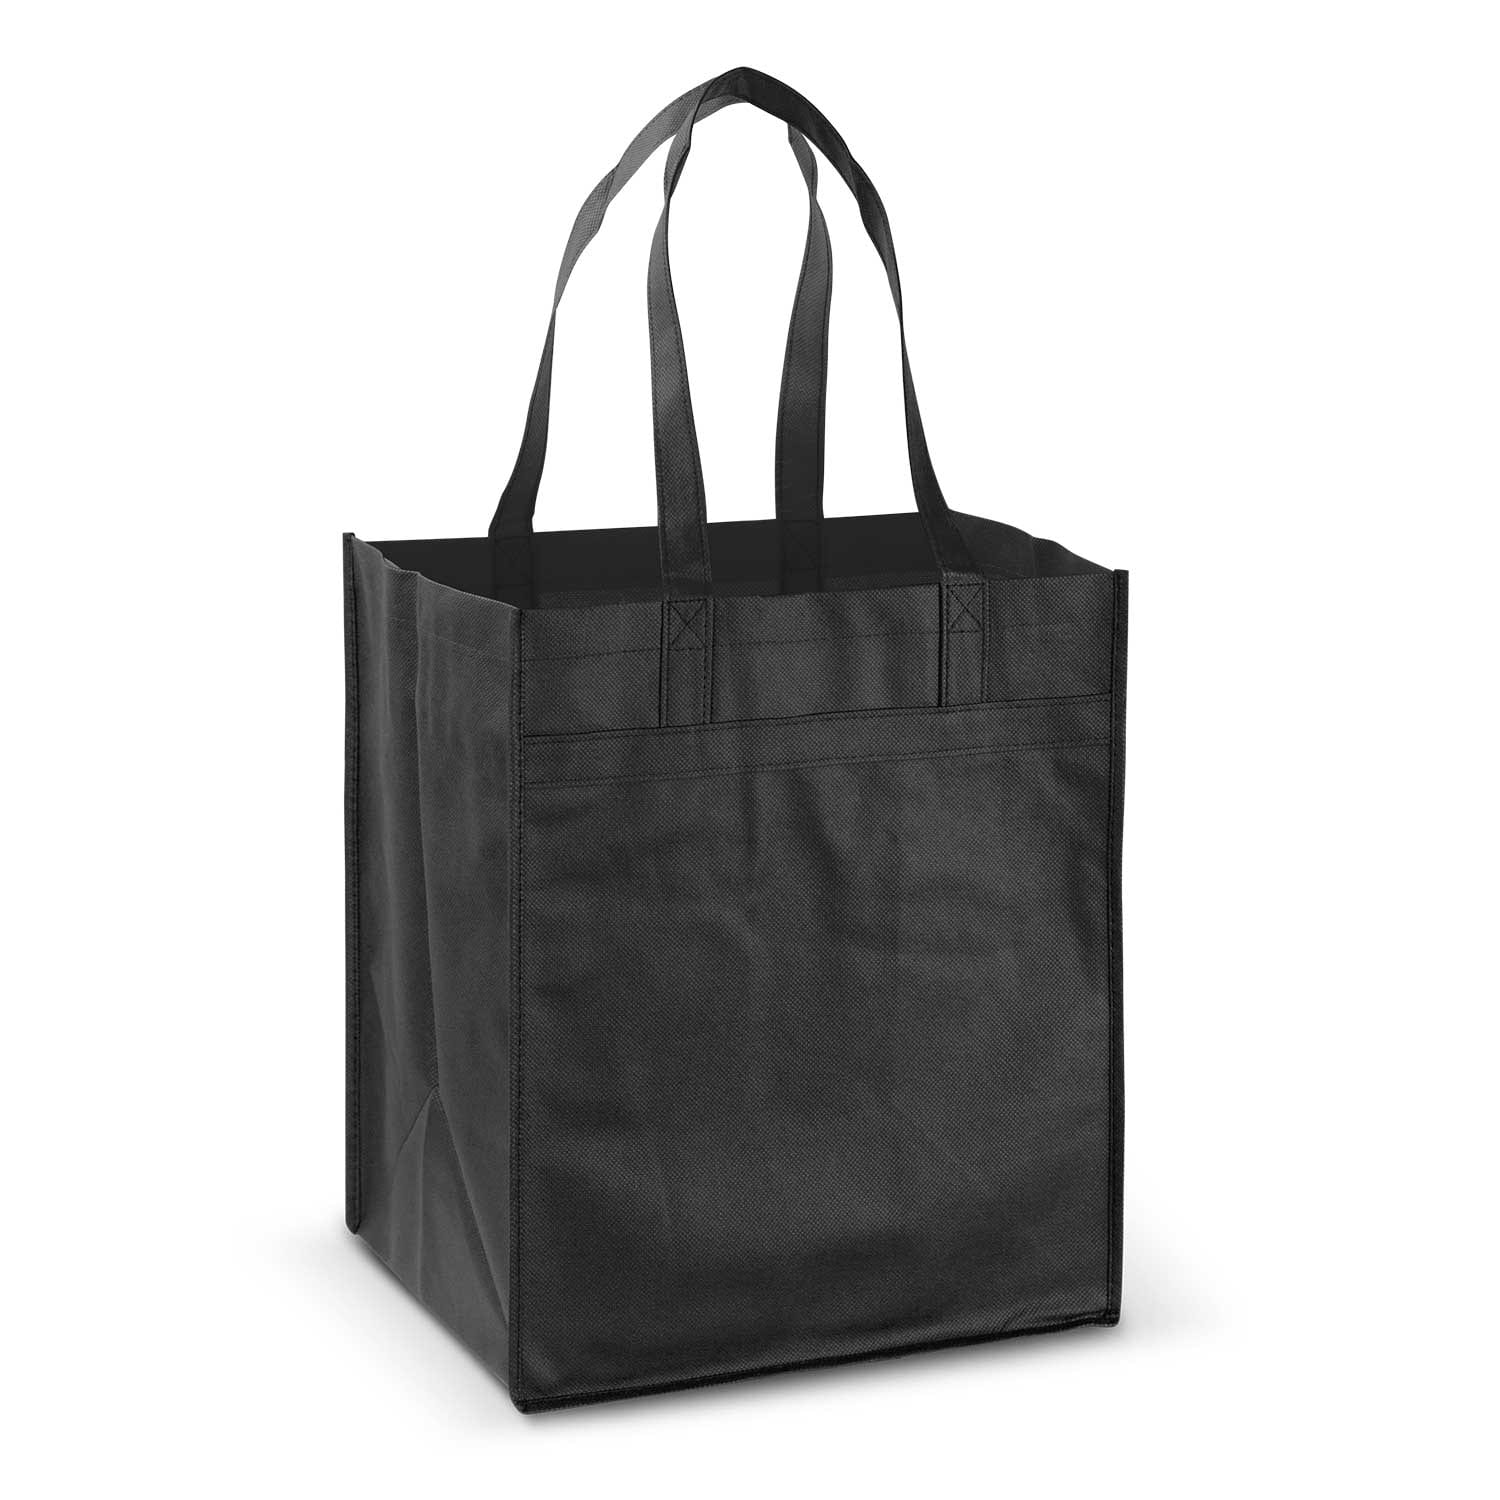 Mega Shopper Tote Bag - Express Promo